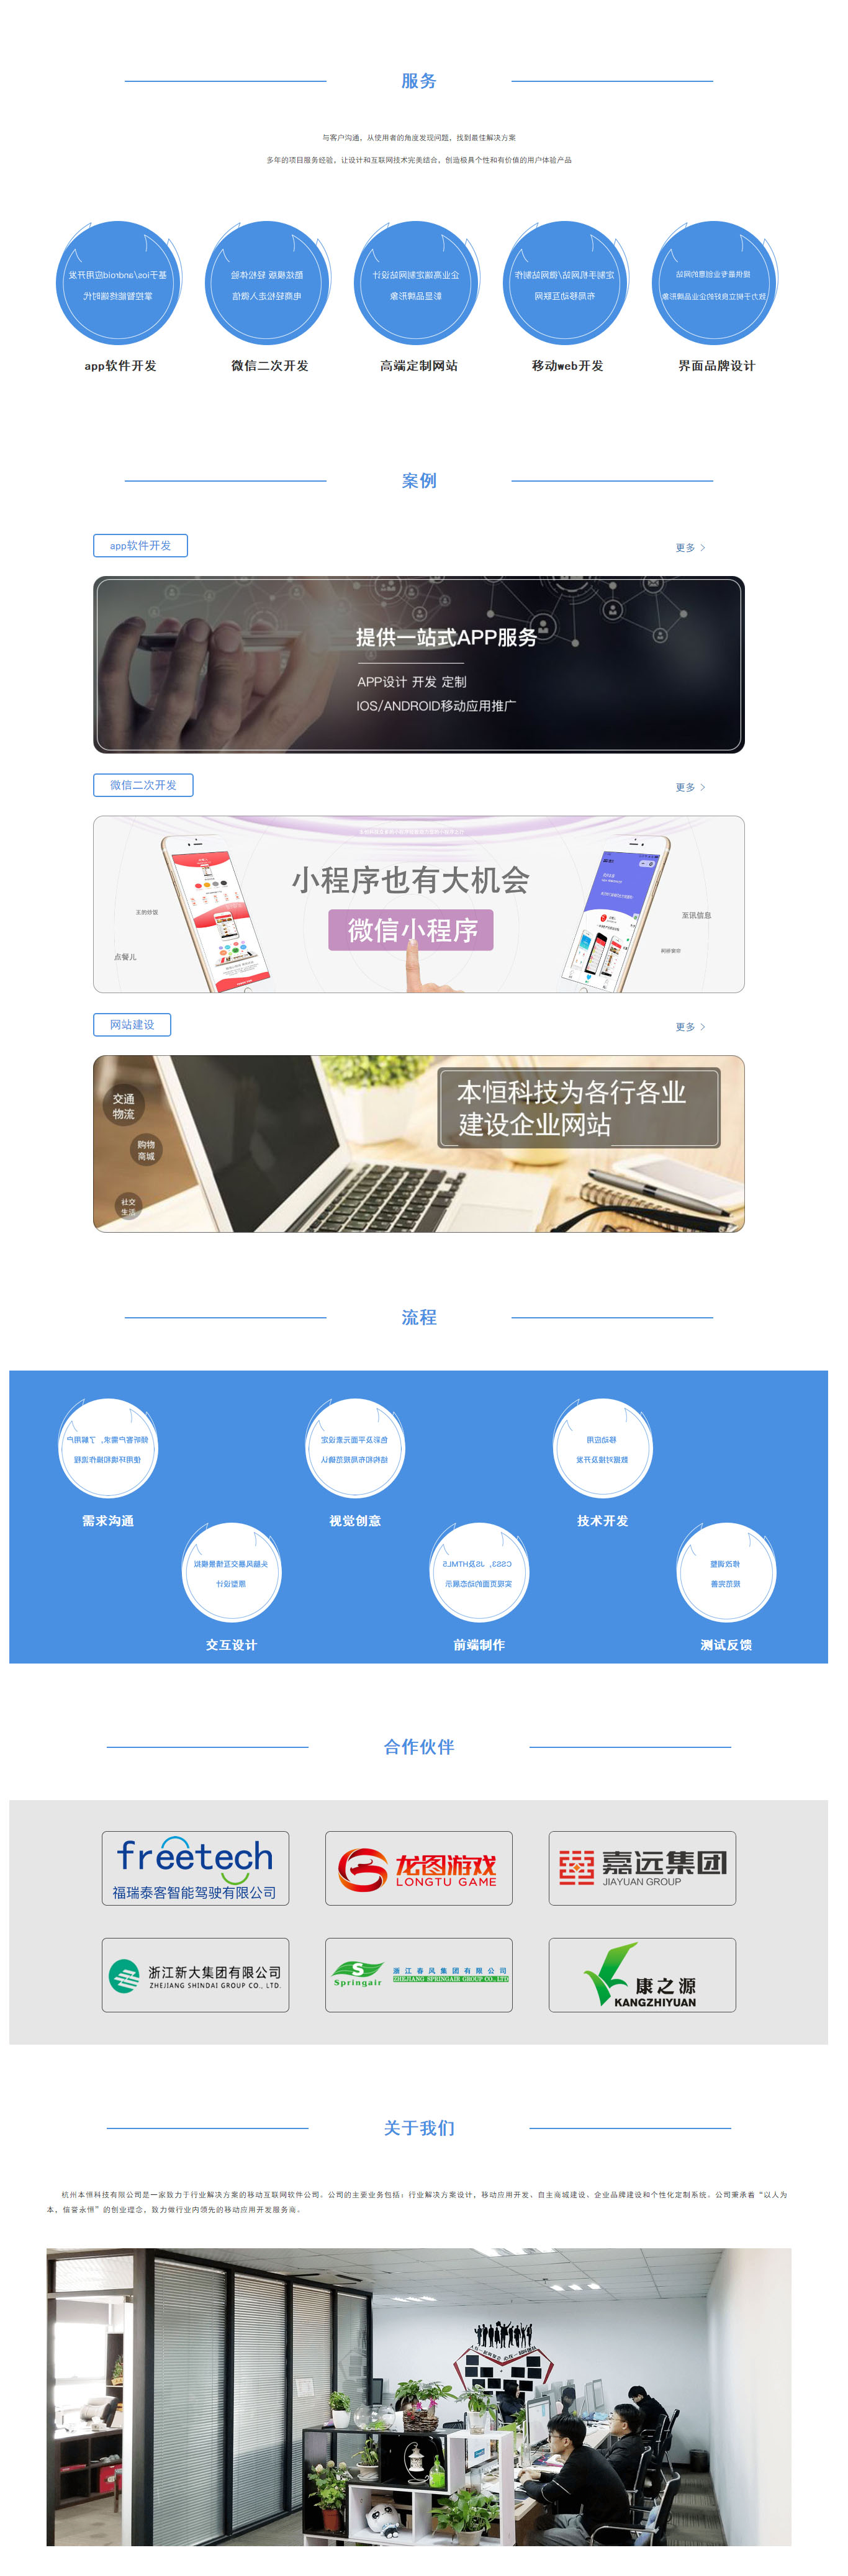 杭州app开发,杭州软件外包,杭州微信小程序开发 - 本恒科技.jpg